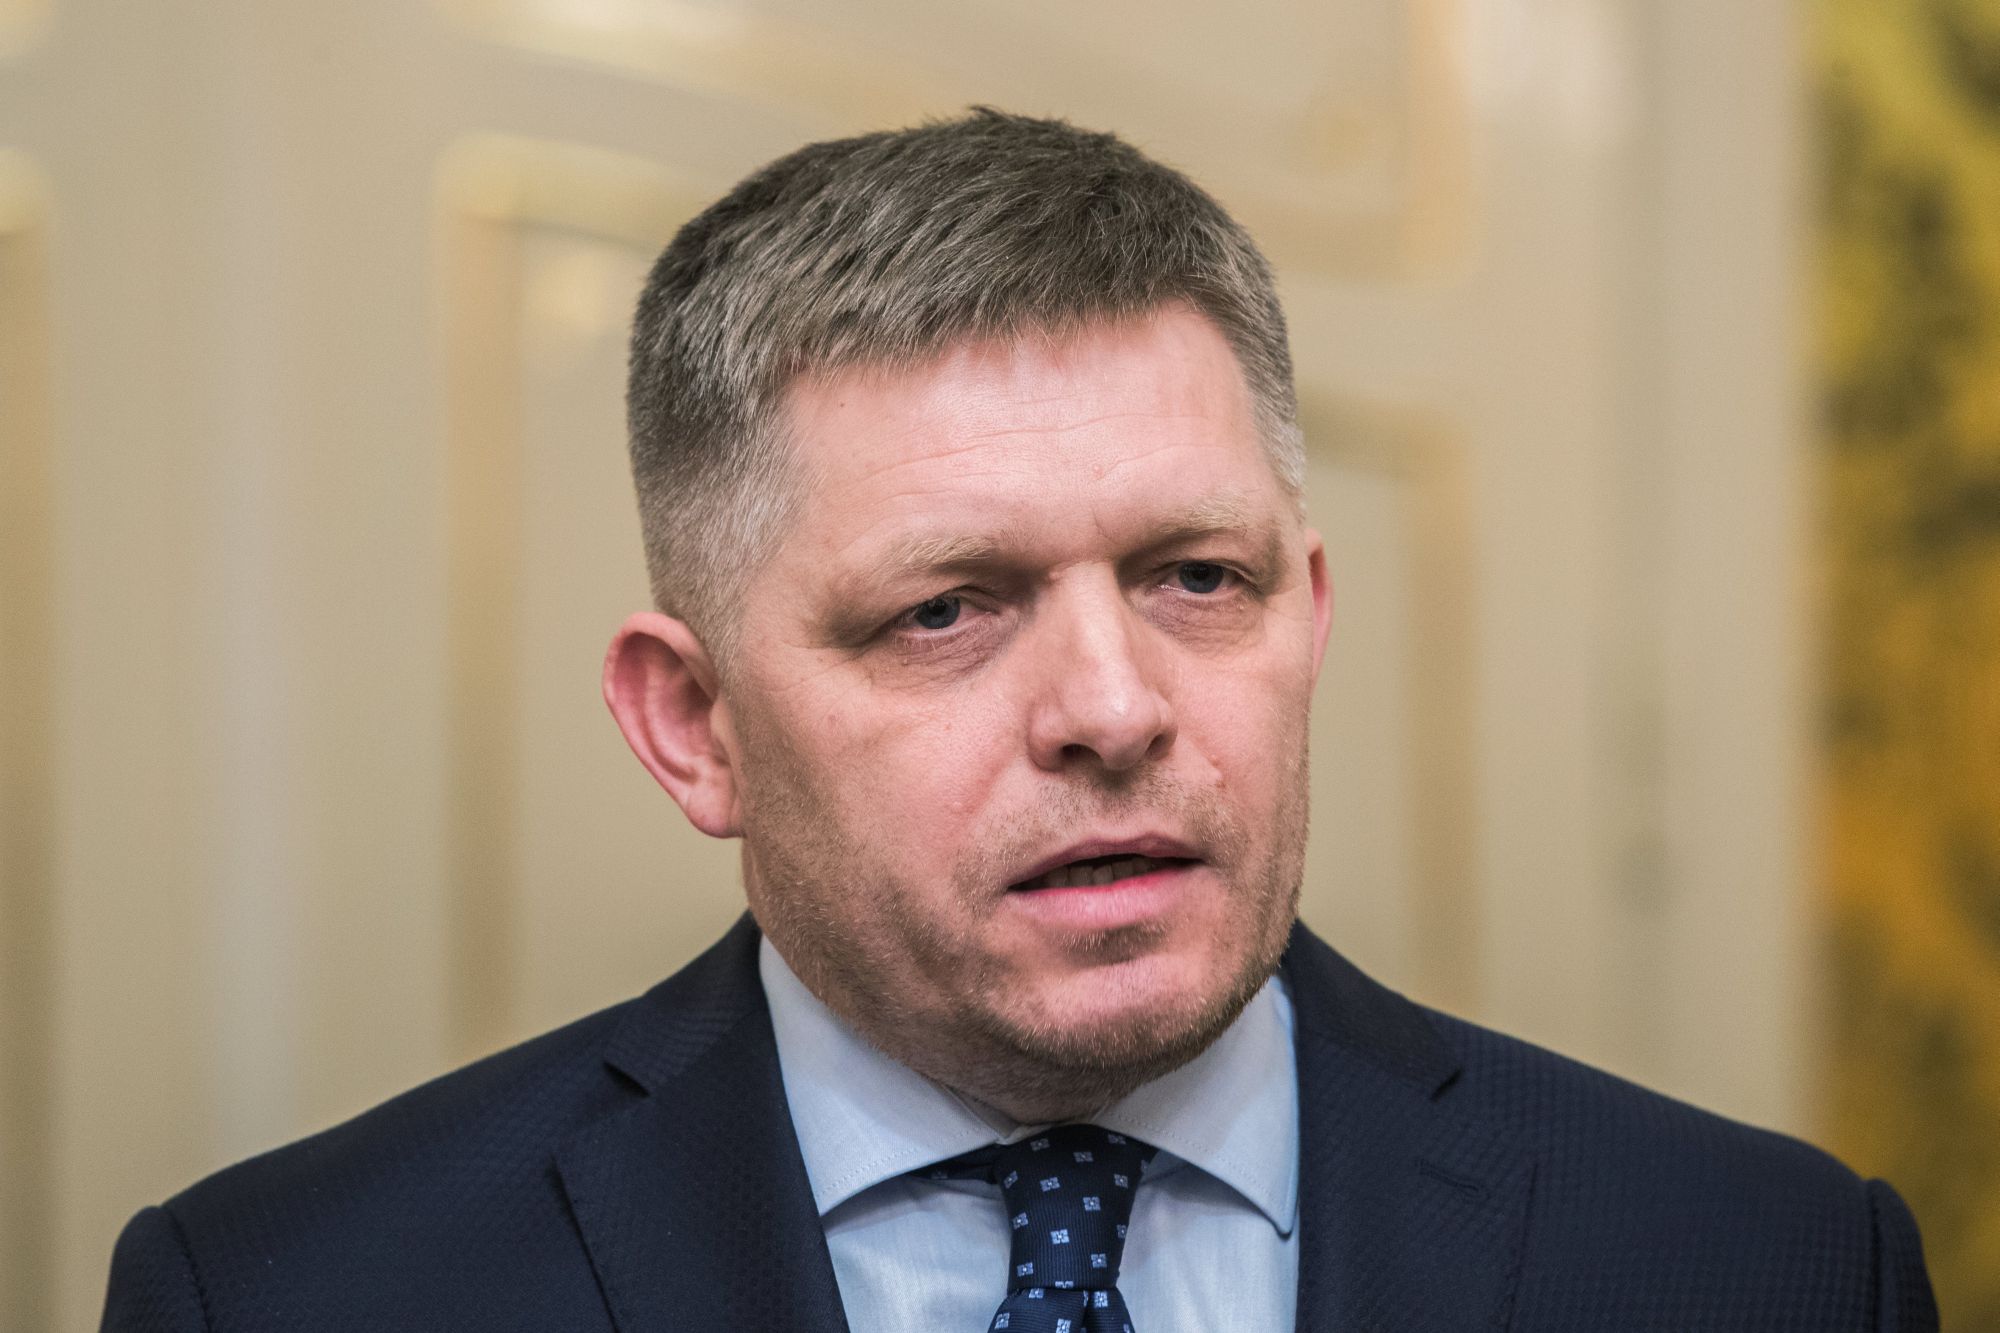 Robert Fico szlovák miniszterelnök sajtótájékoztatót tart a pozsonyi kormánypalotában 2018. március 14-én. Fico bejelentette, hogy bizonyos feltételekkel kész lemondani a kormányfői tisztségről. Ezek a feltételek, hogy Andrej Kiska államfő elfogadja, hogy a választásokon győztes párt, az Irány - Szociáldemokrácia (Smer-SD) dönt a kormány összetételéről, elfogadja a miniszterelnök lemondását követően megalakuló kormányt, illetve szavatolja, hogy a hárompárti koalíció tovább működhessen. (MTIEPA/Jakub Gavlak)